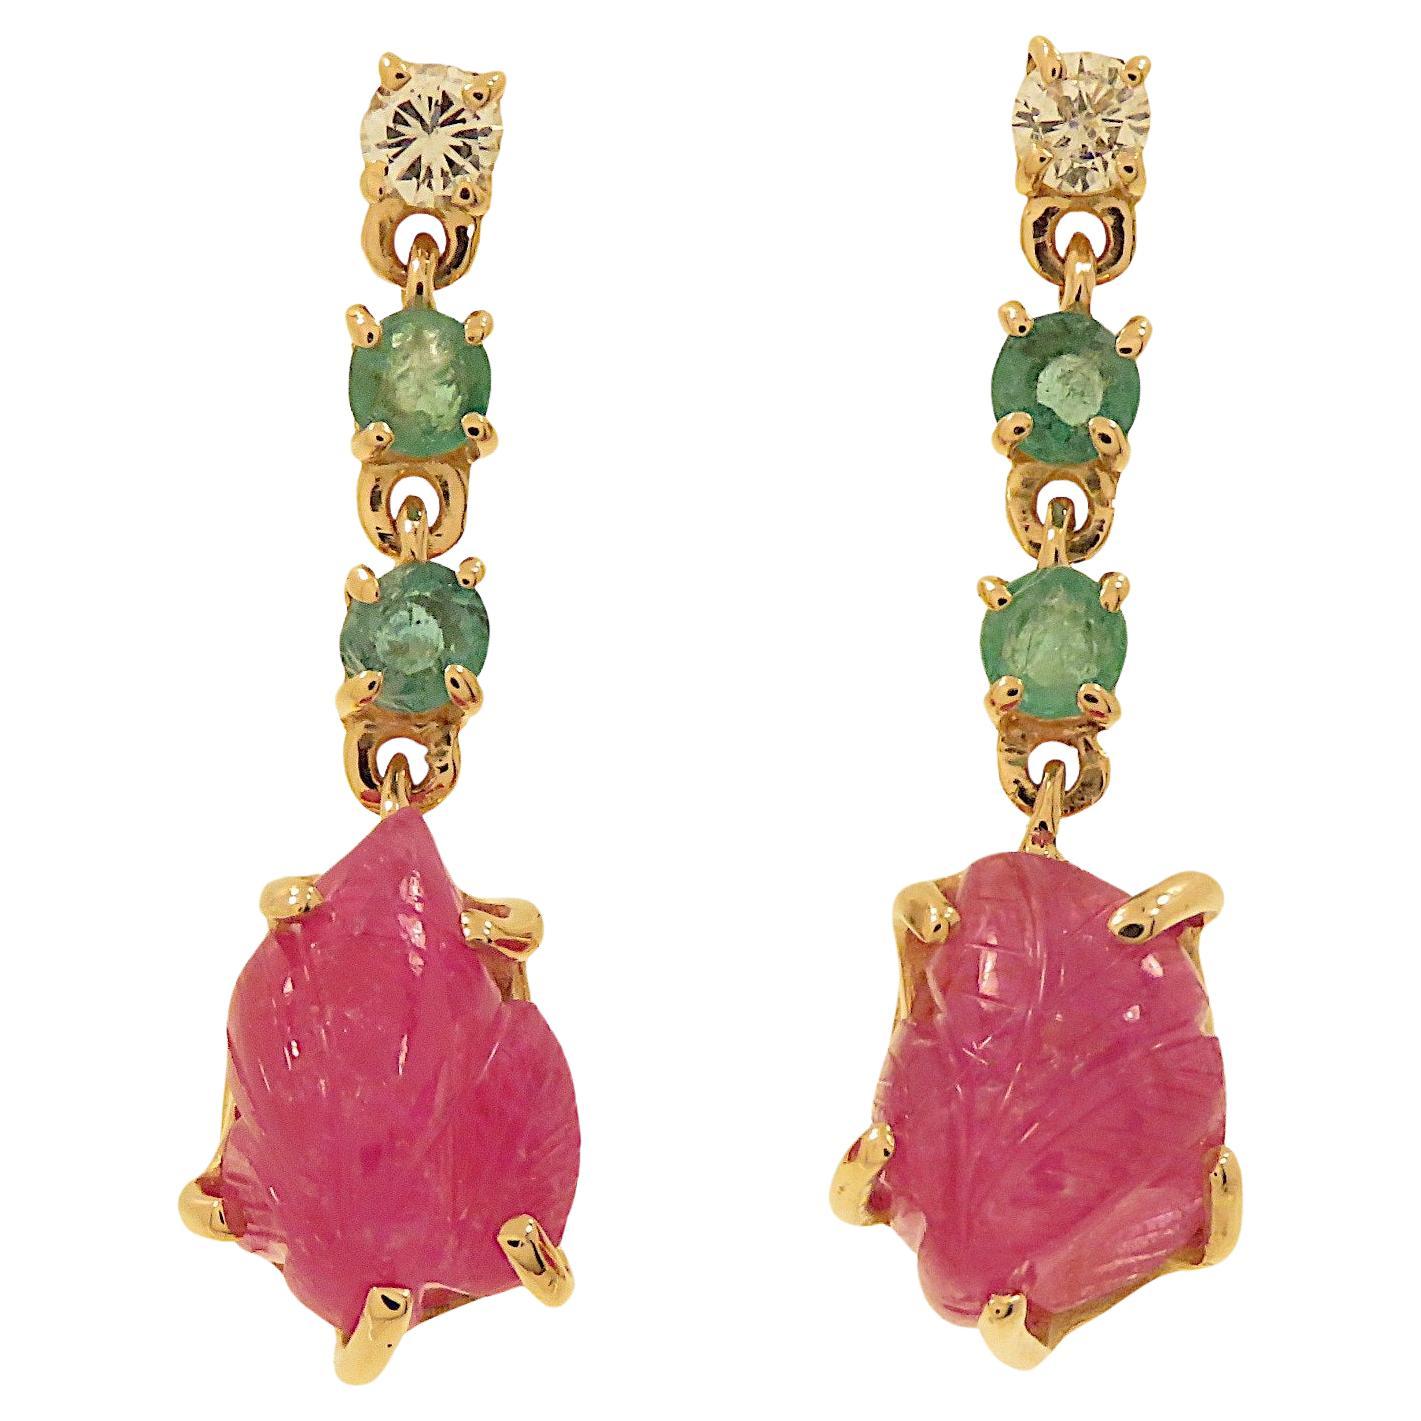 Botta gioielli orecchini con diamanti rubini e smeraldi in oro rosa